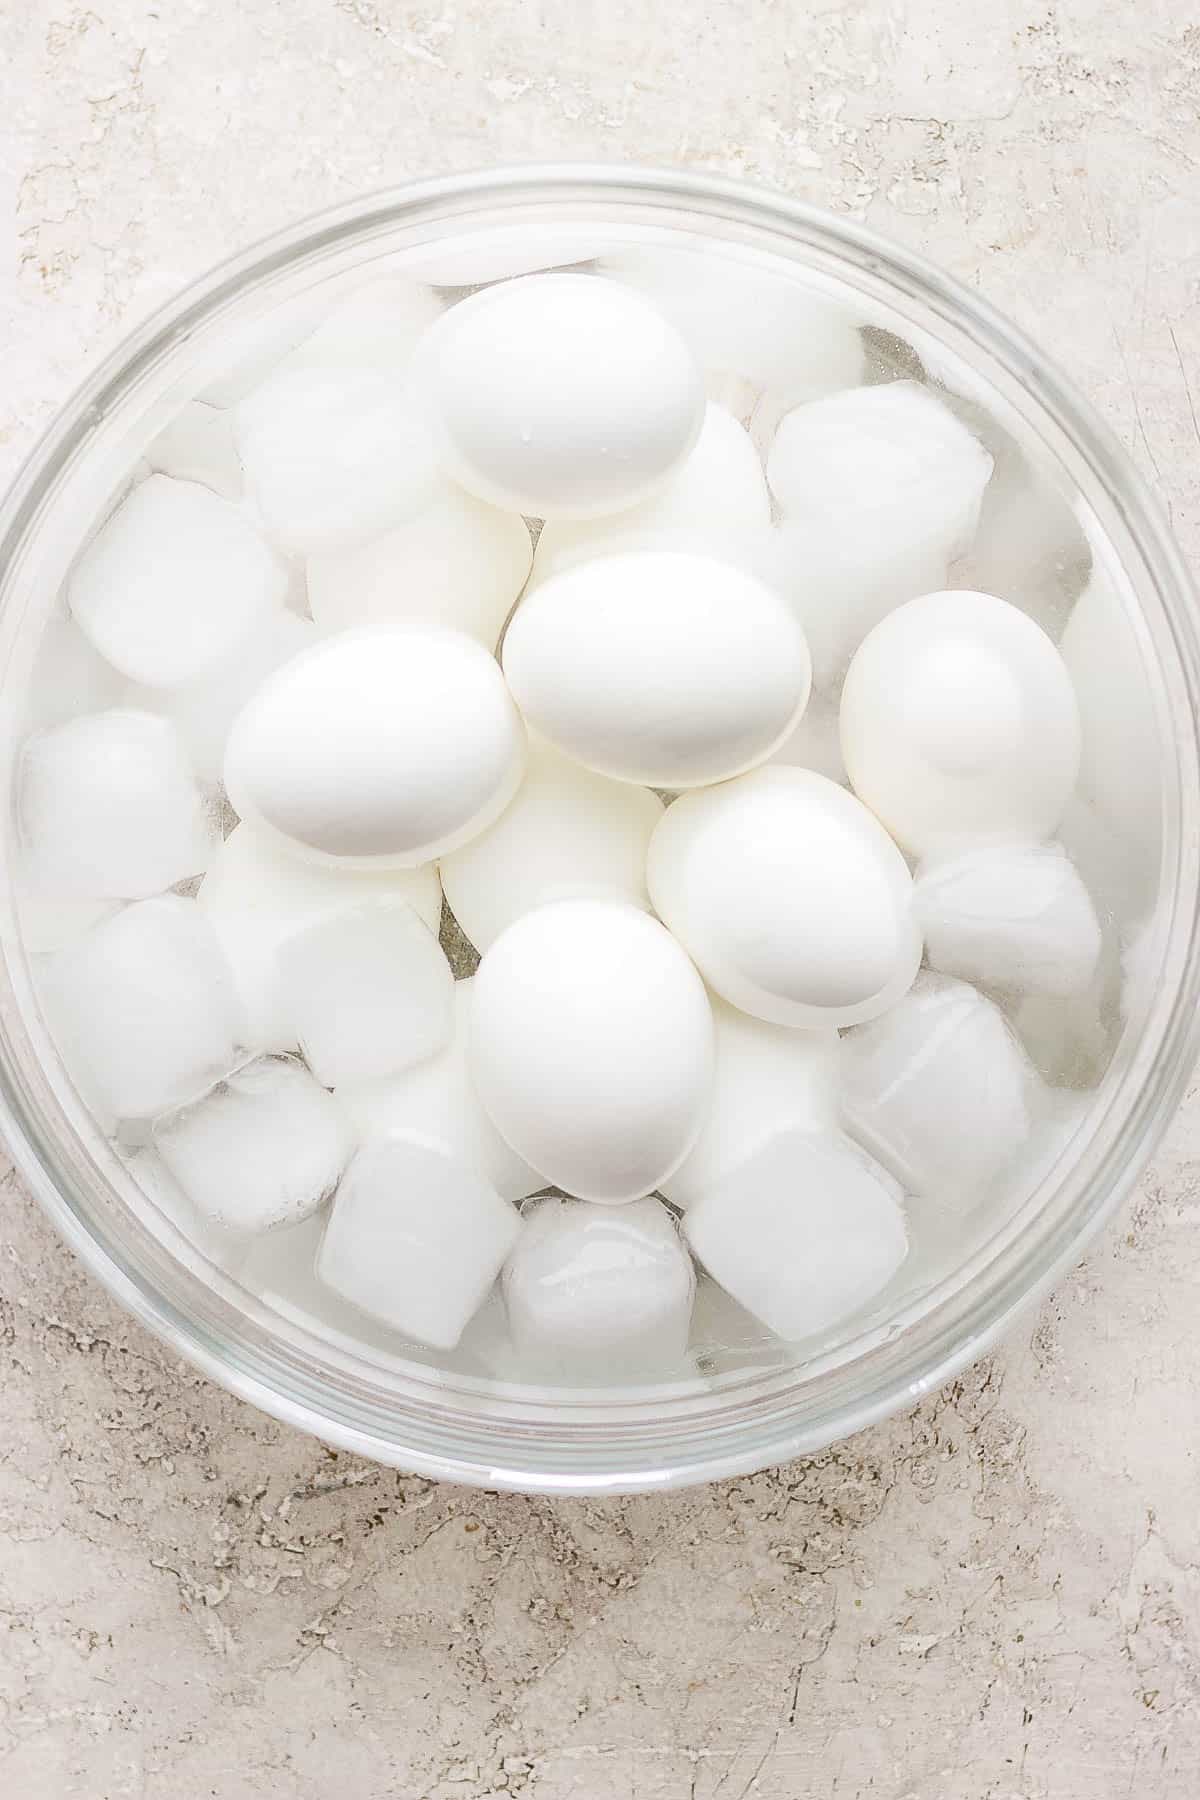 12 eggs in an ice bath.